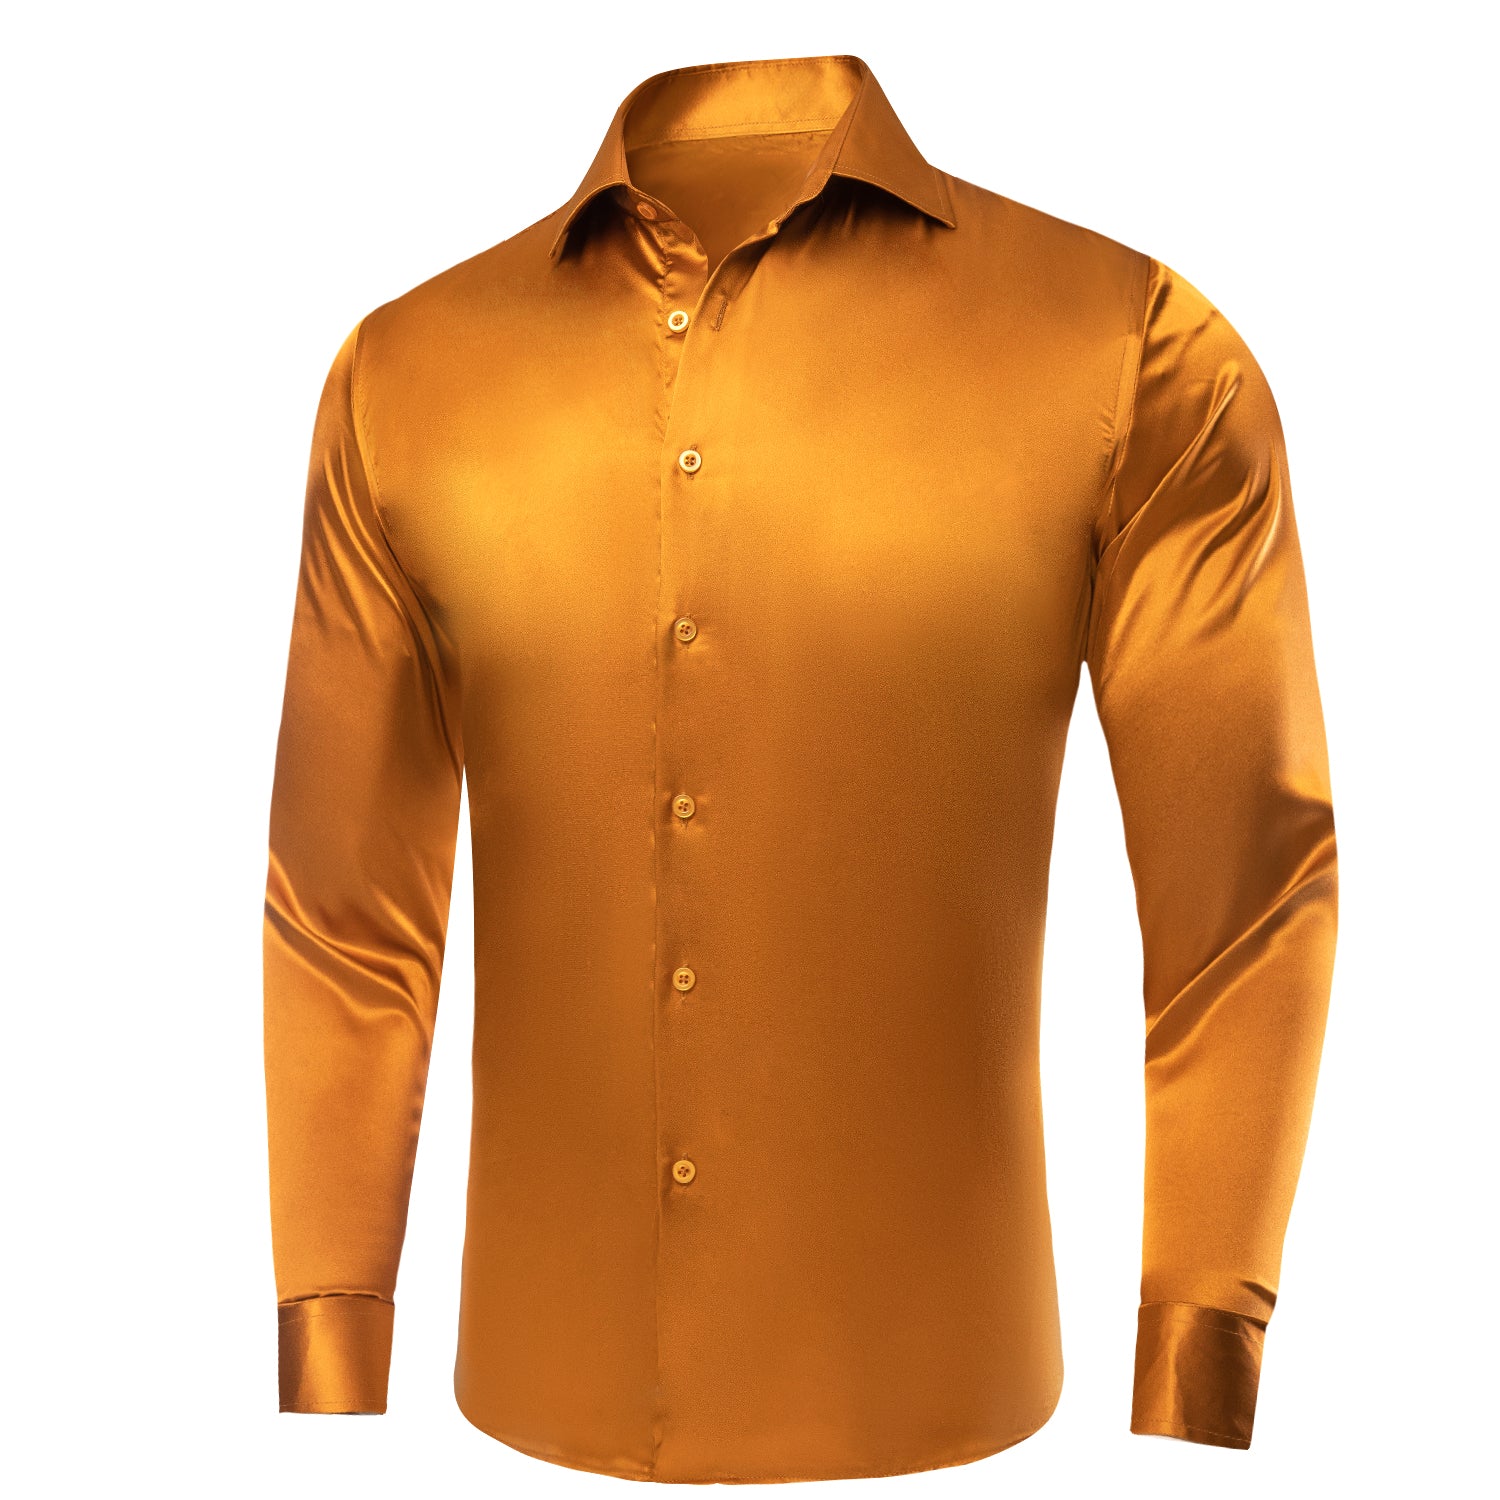 Golden Yellow Solid Satin Silk Men's Long Sleeve Dress Shirt